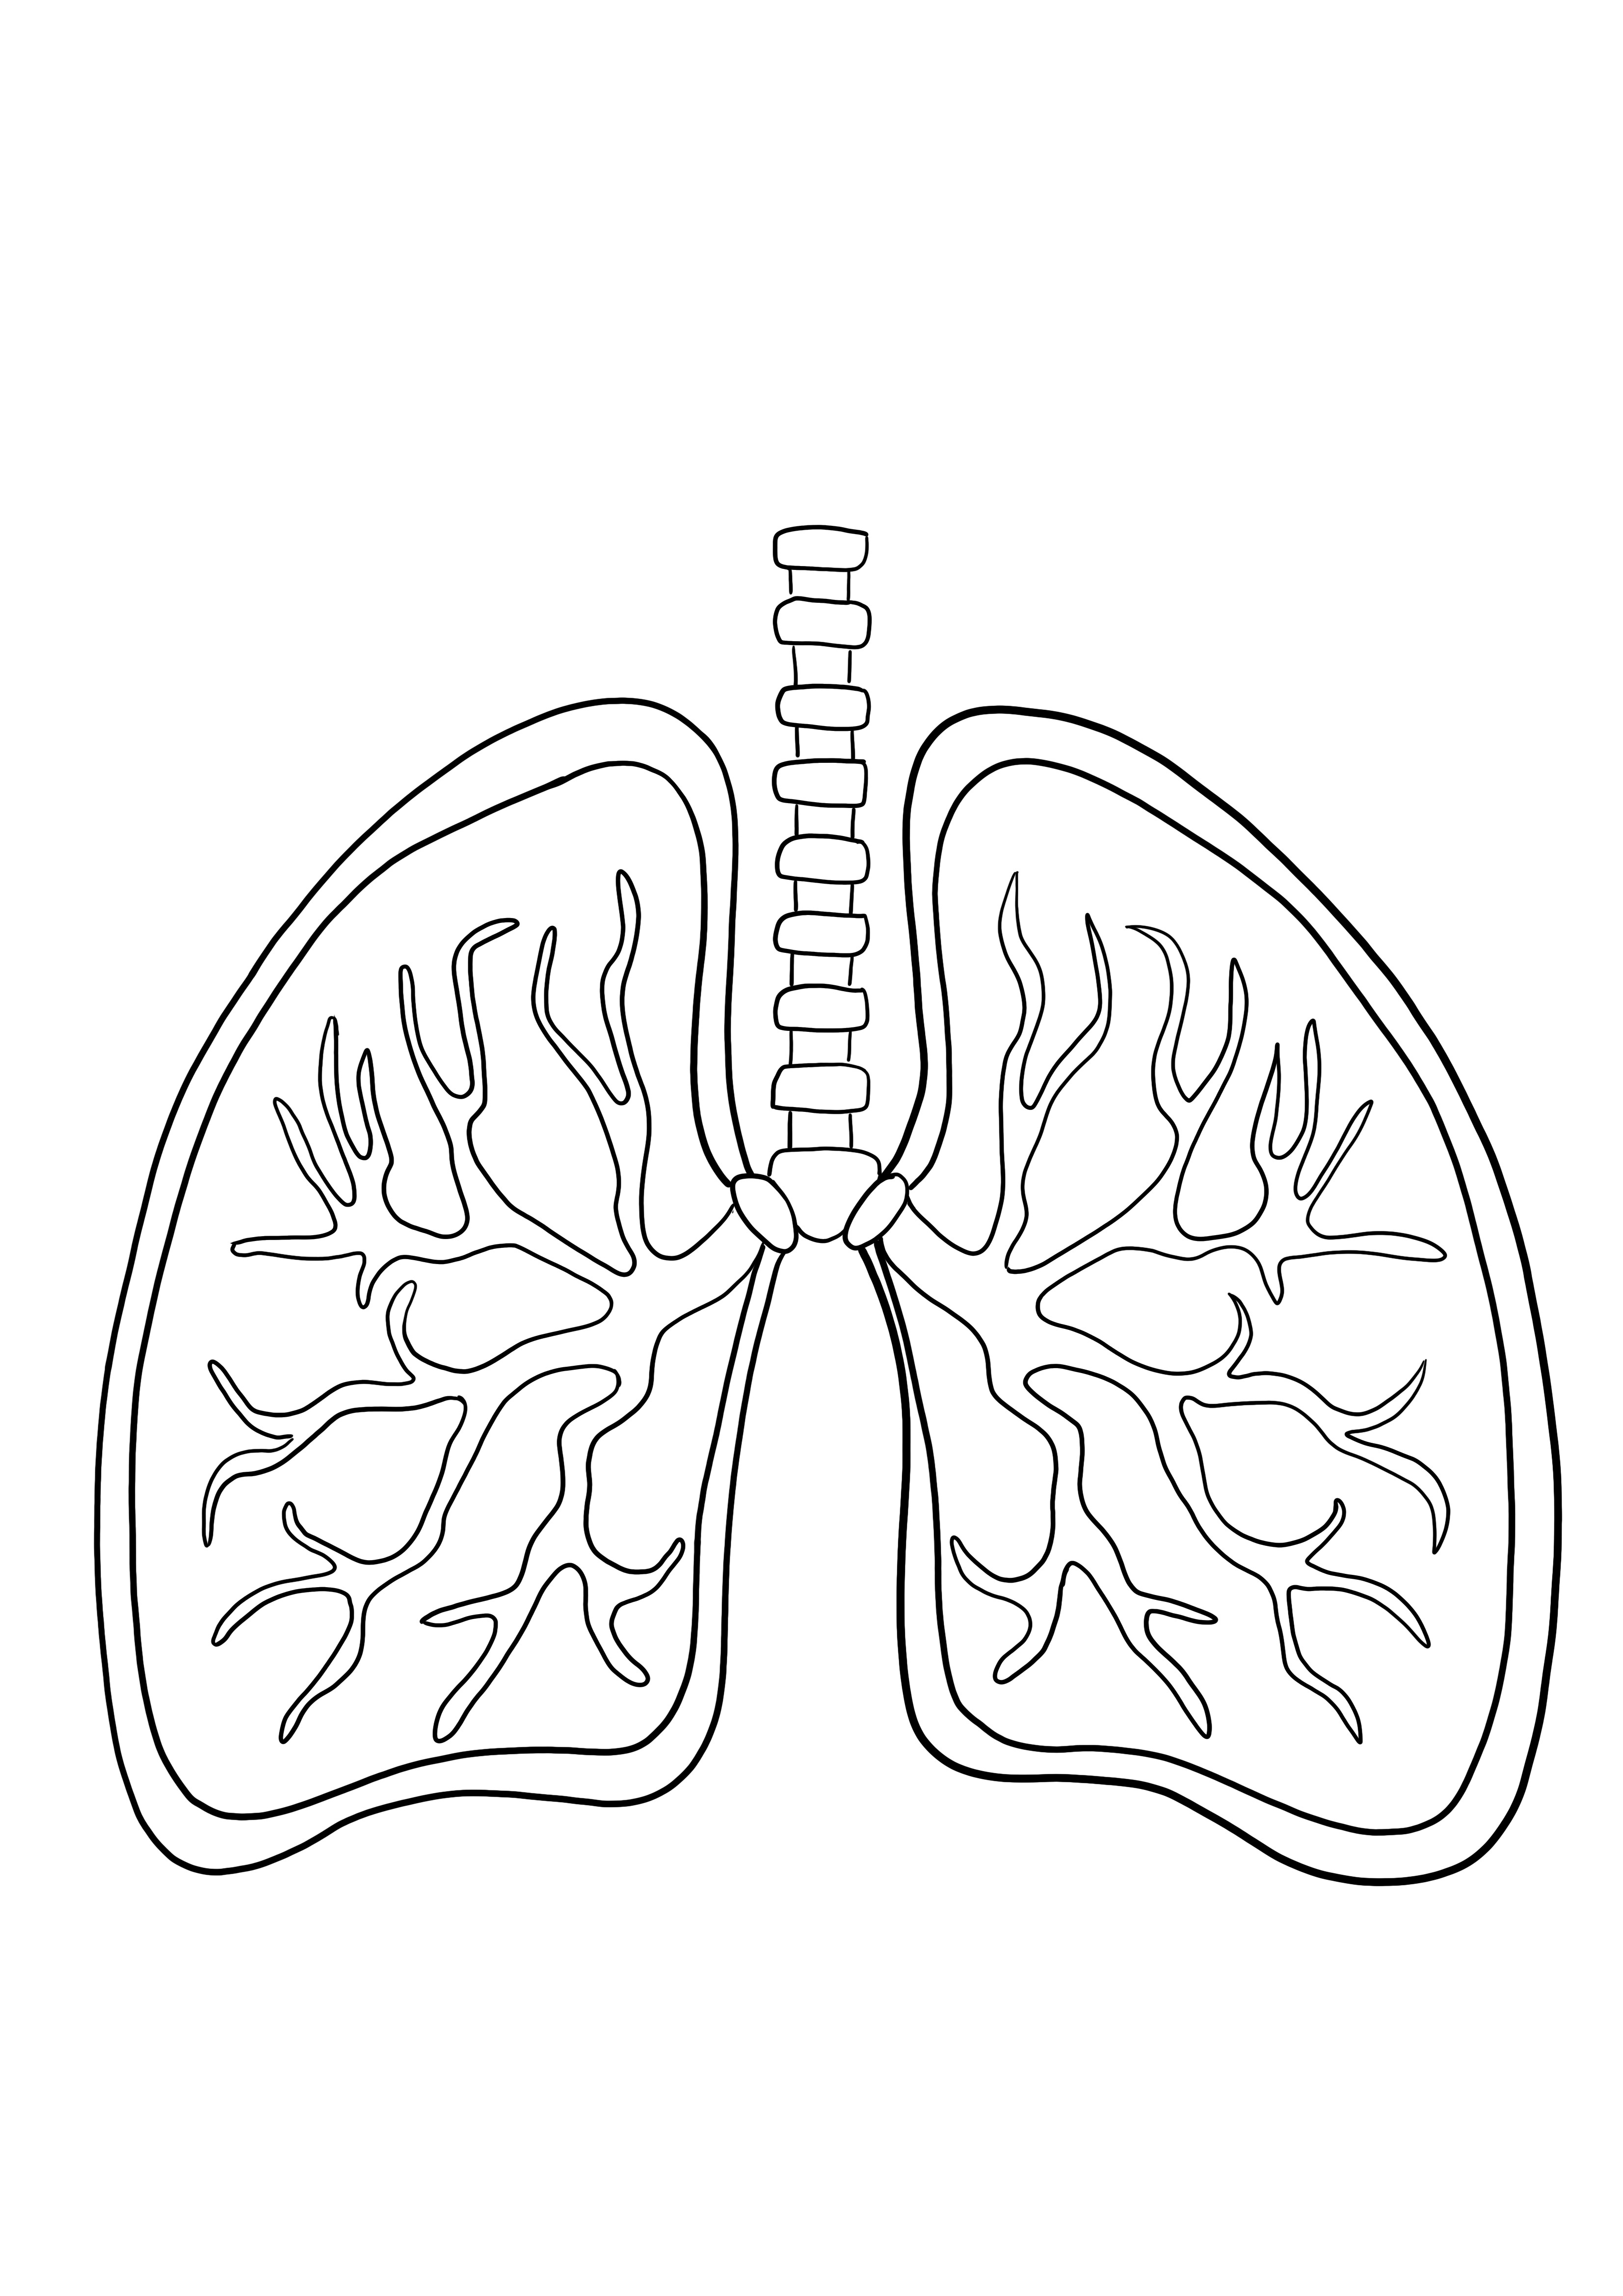 Coloração de pulmões e imagem de impressão gratuita